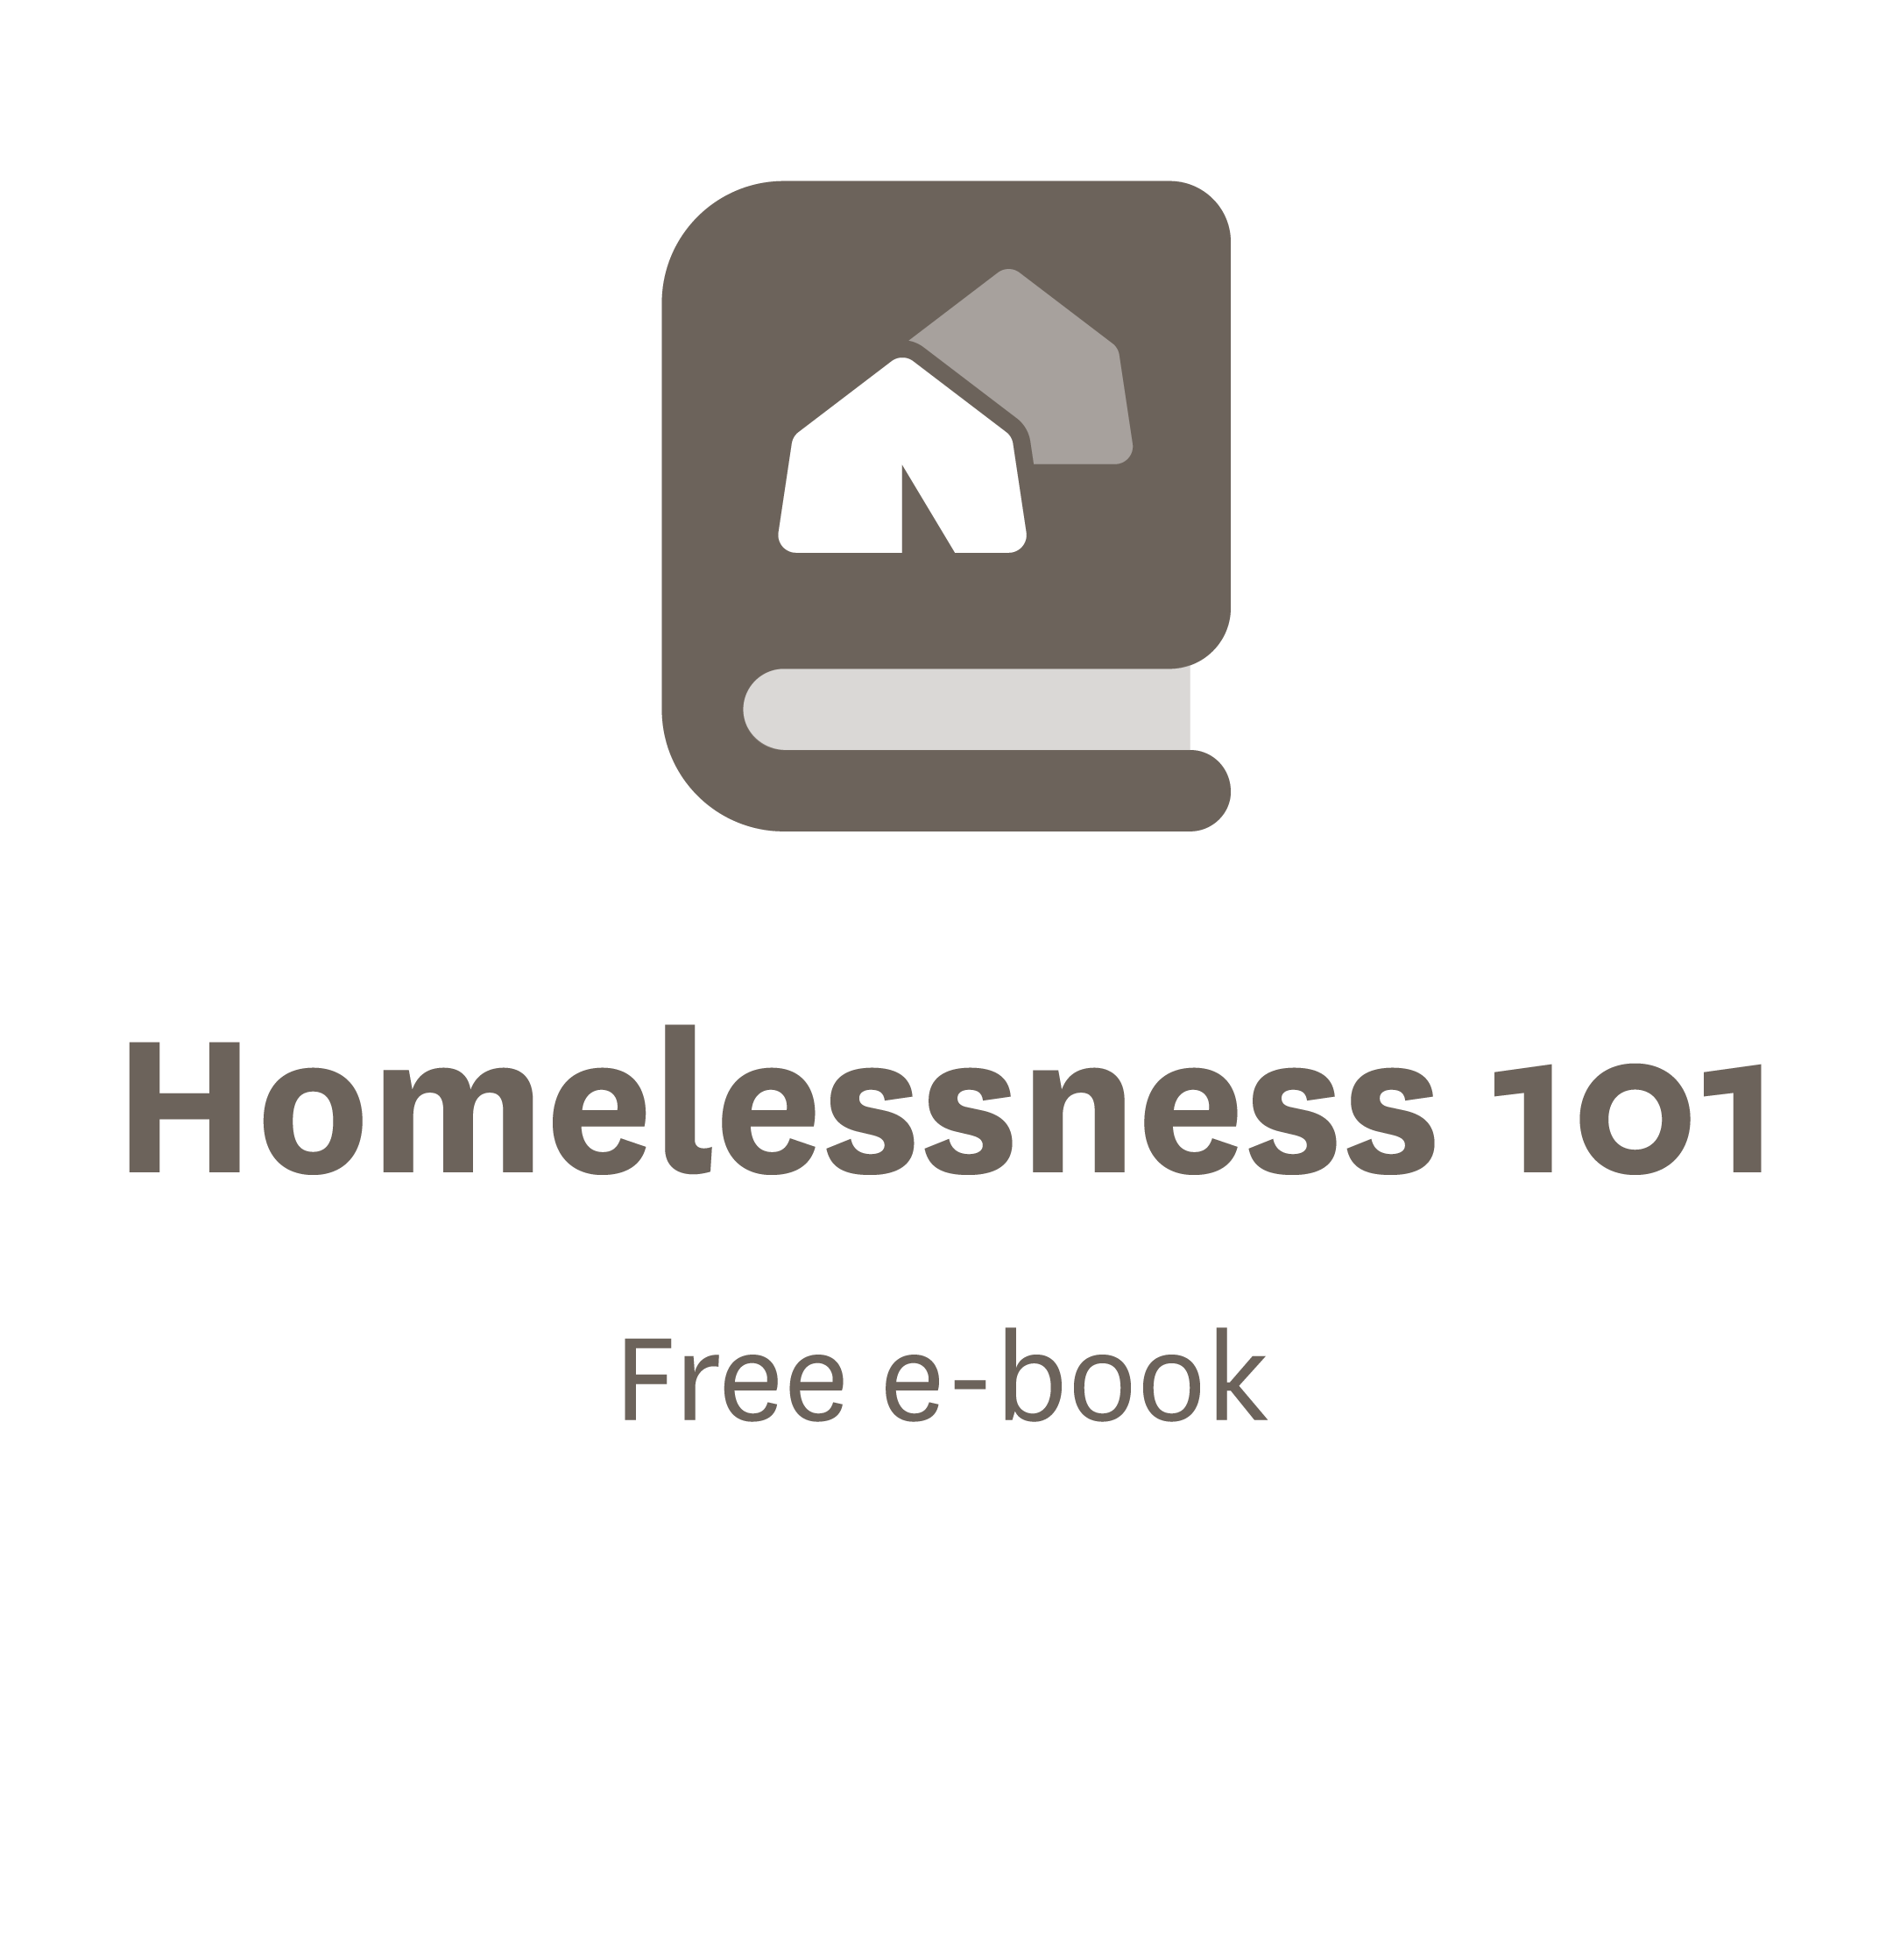 Free e-book - Homelessness 101